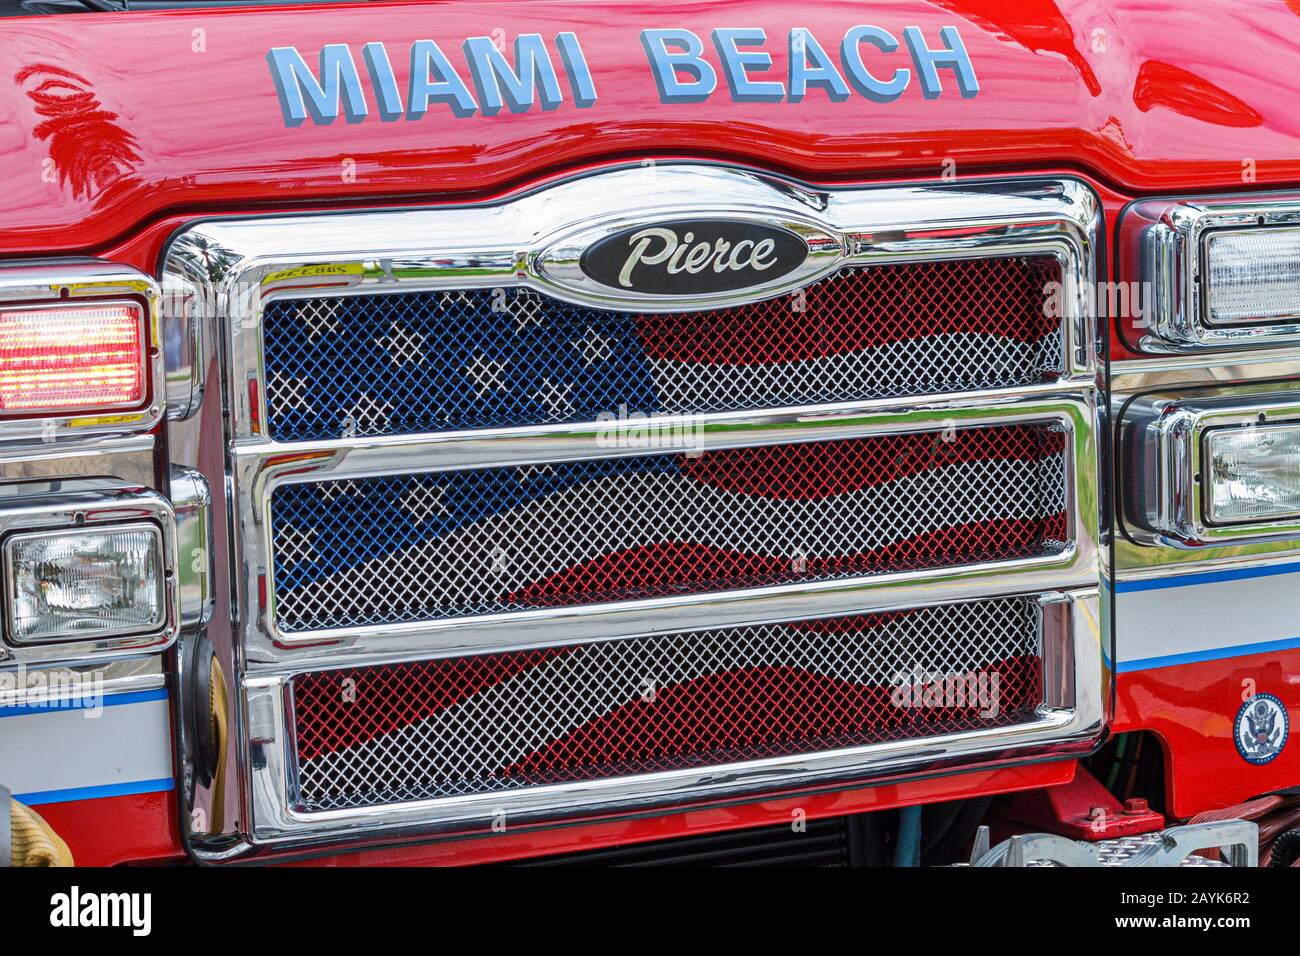 Miami Beach Florida, Feuerwehr LKW, Grill, Flagge, patriotisch, Besucher Reise Reise Reise Tourismus Wahrzeichen Kultur Kultur Kultur, vaca Stockfoto